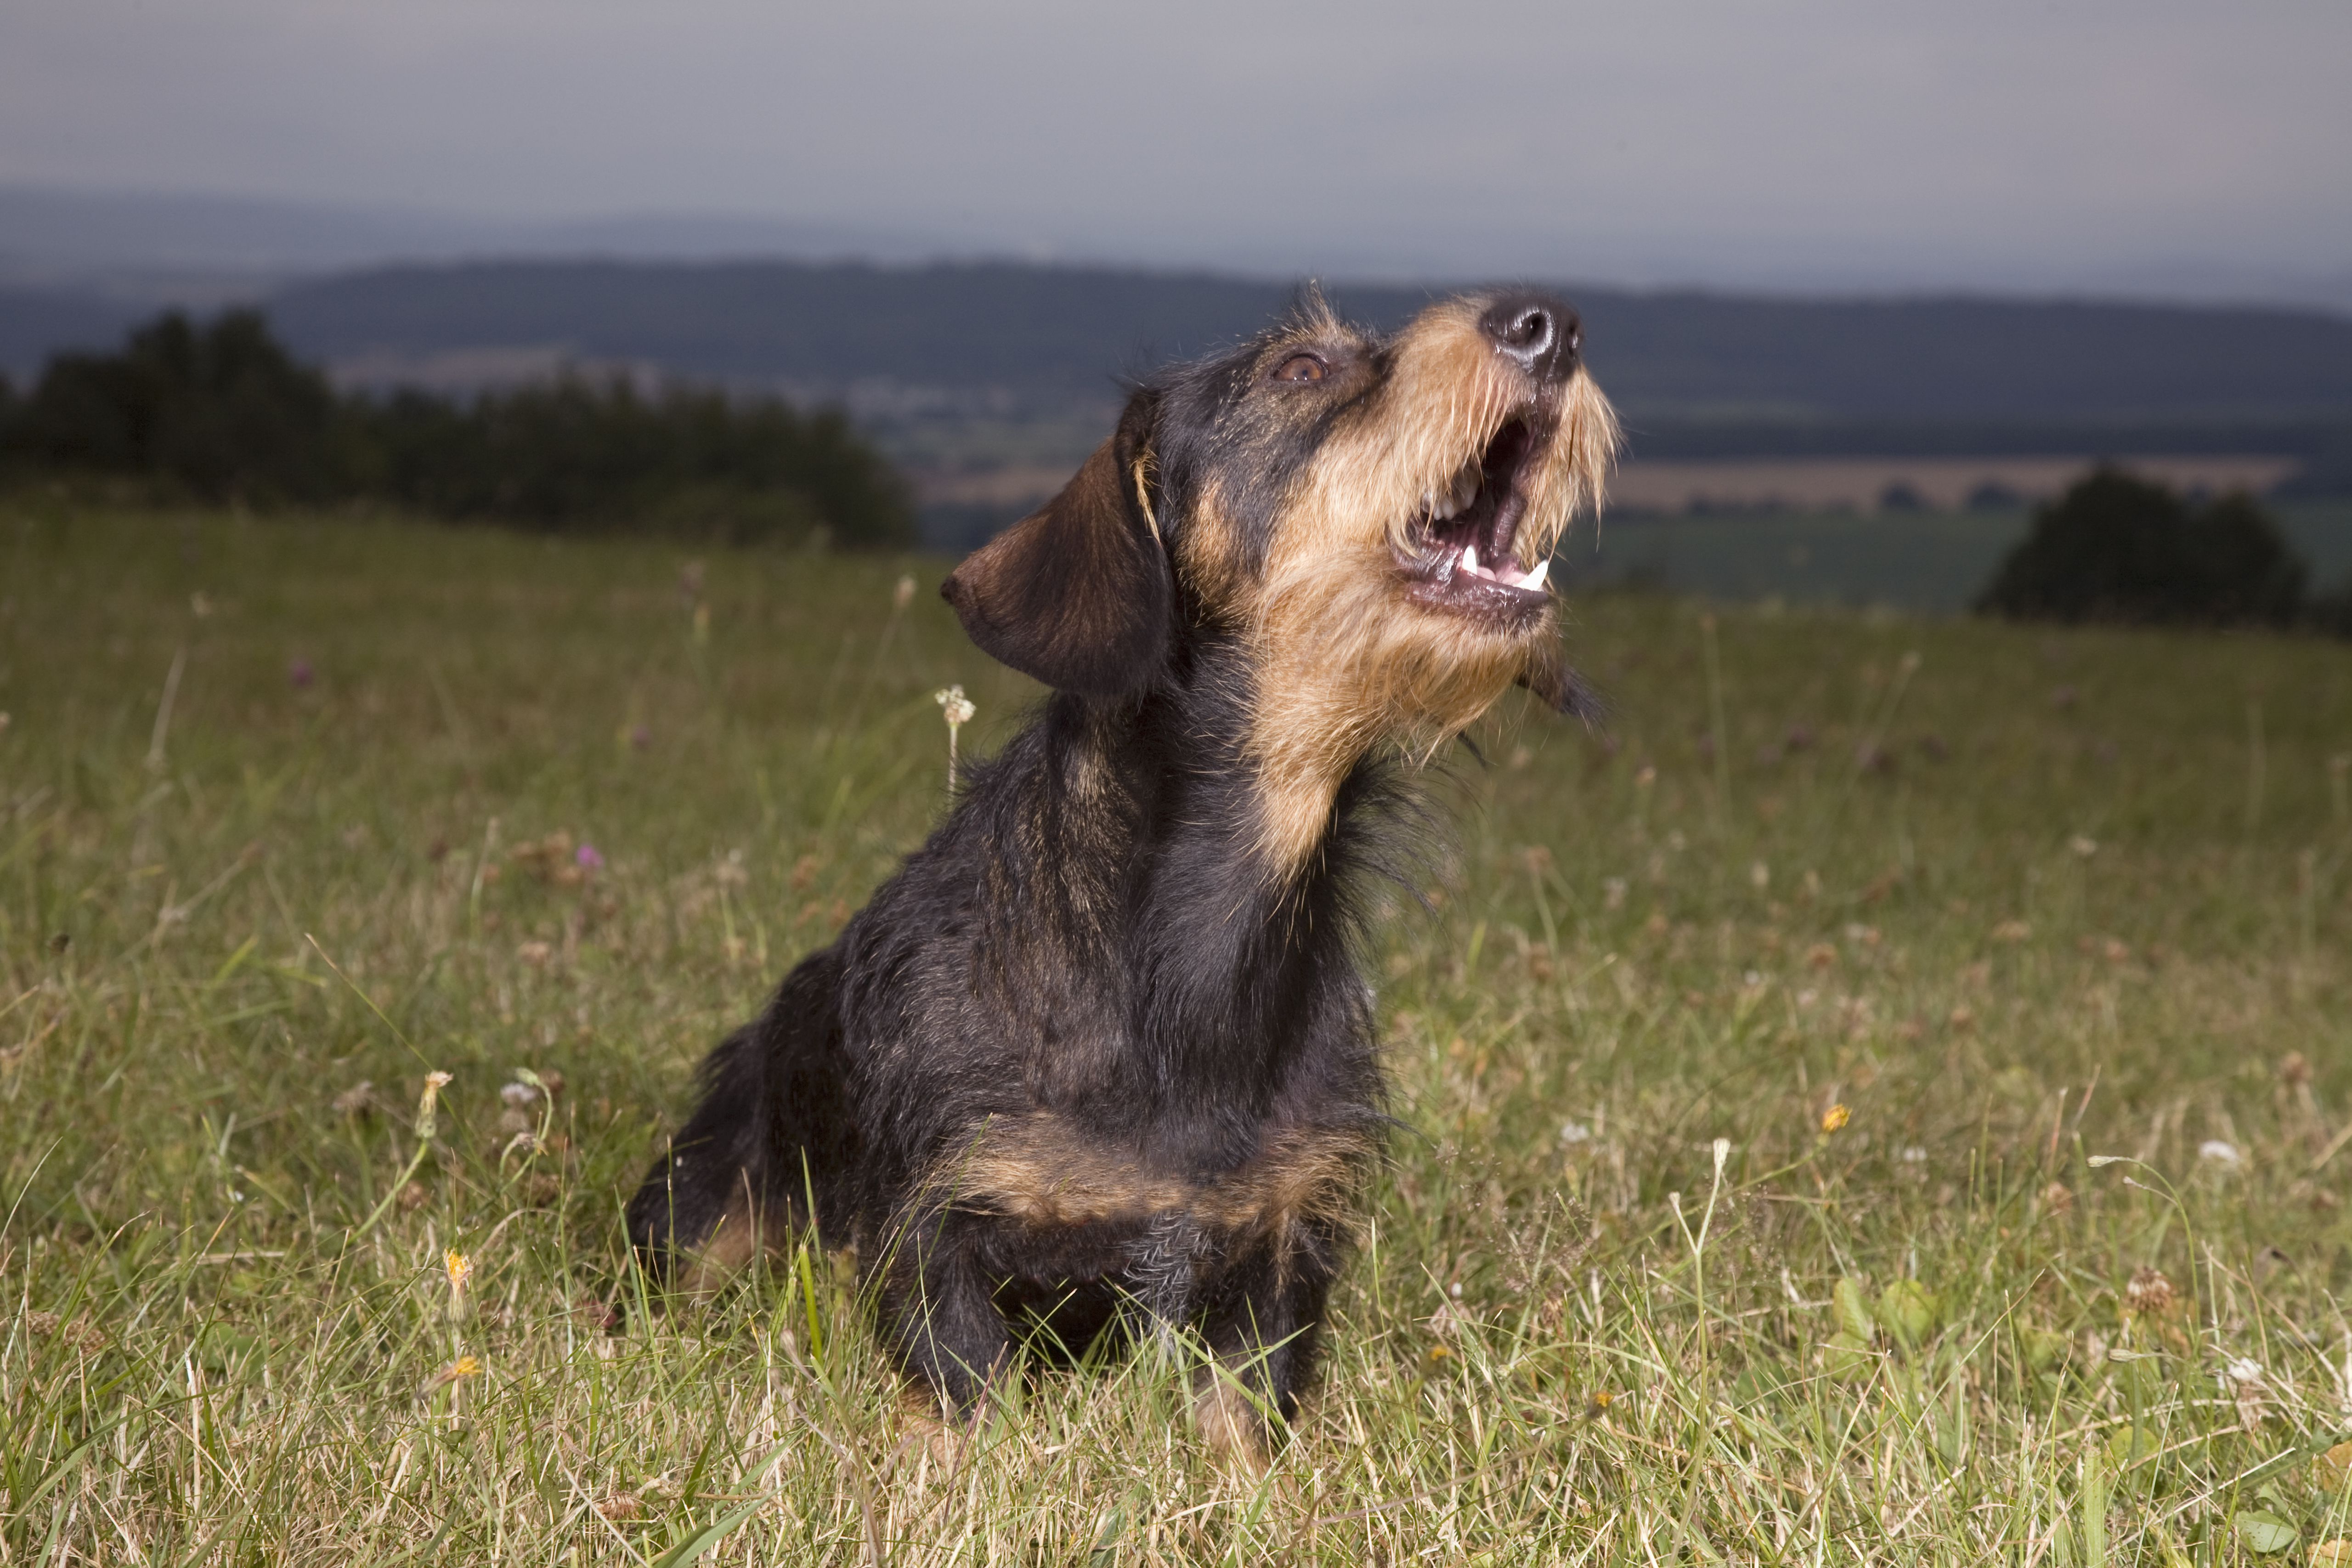 A howling dachshund dog